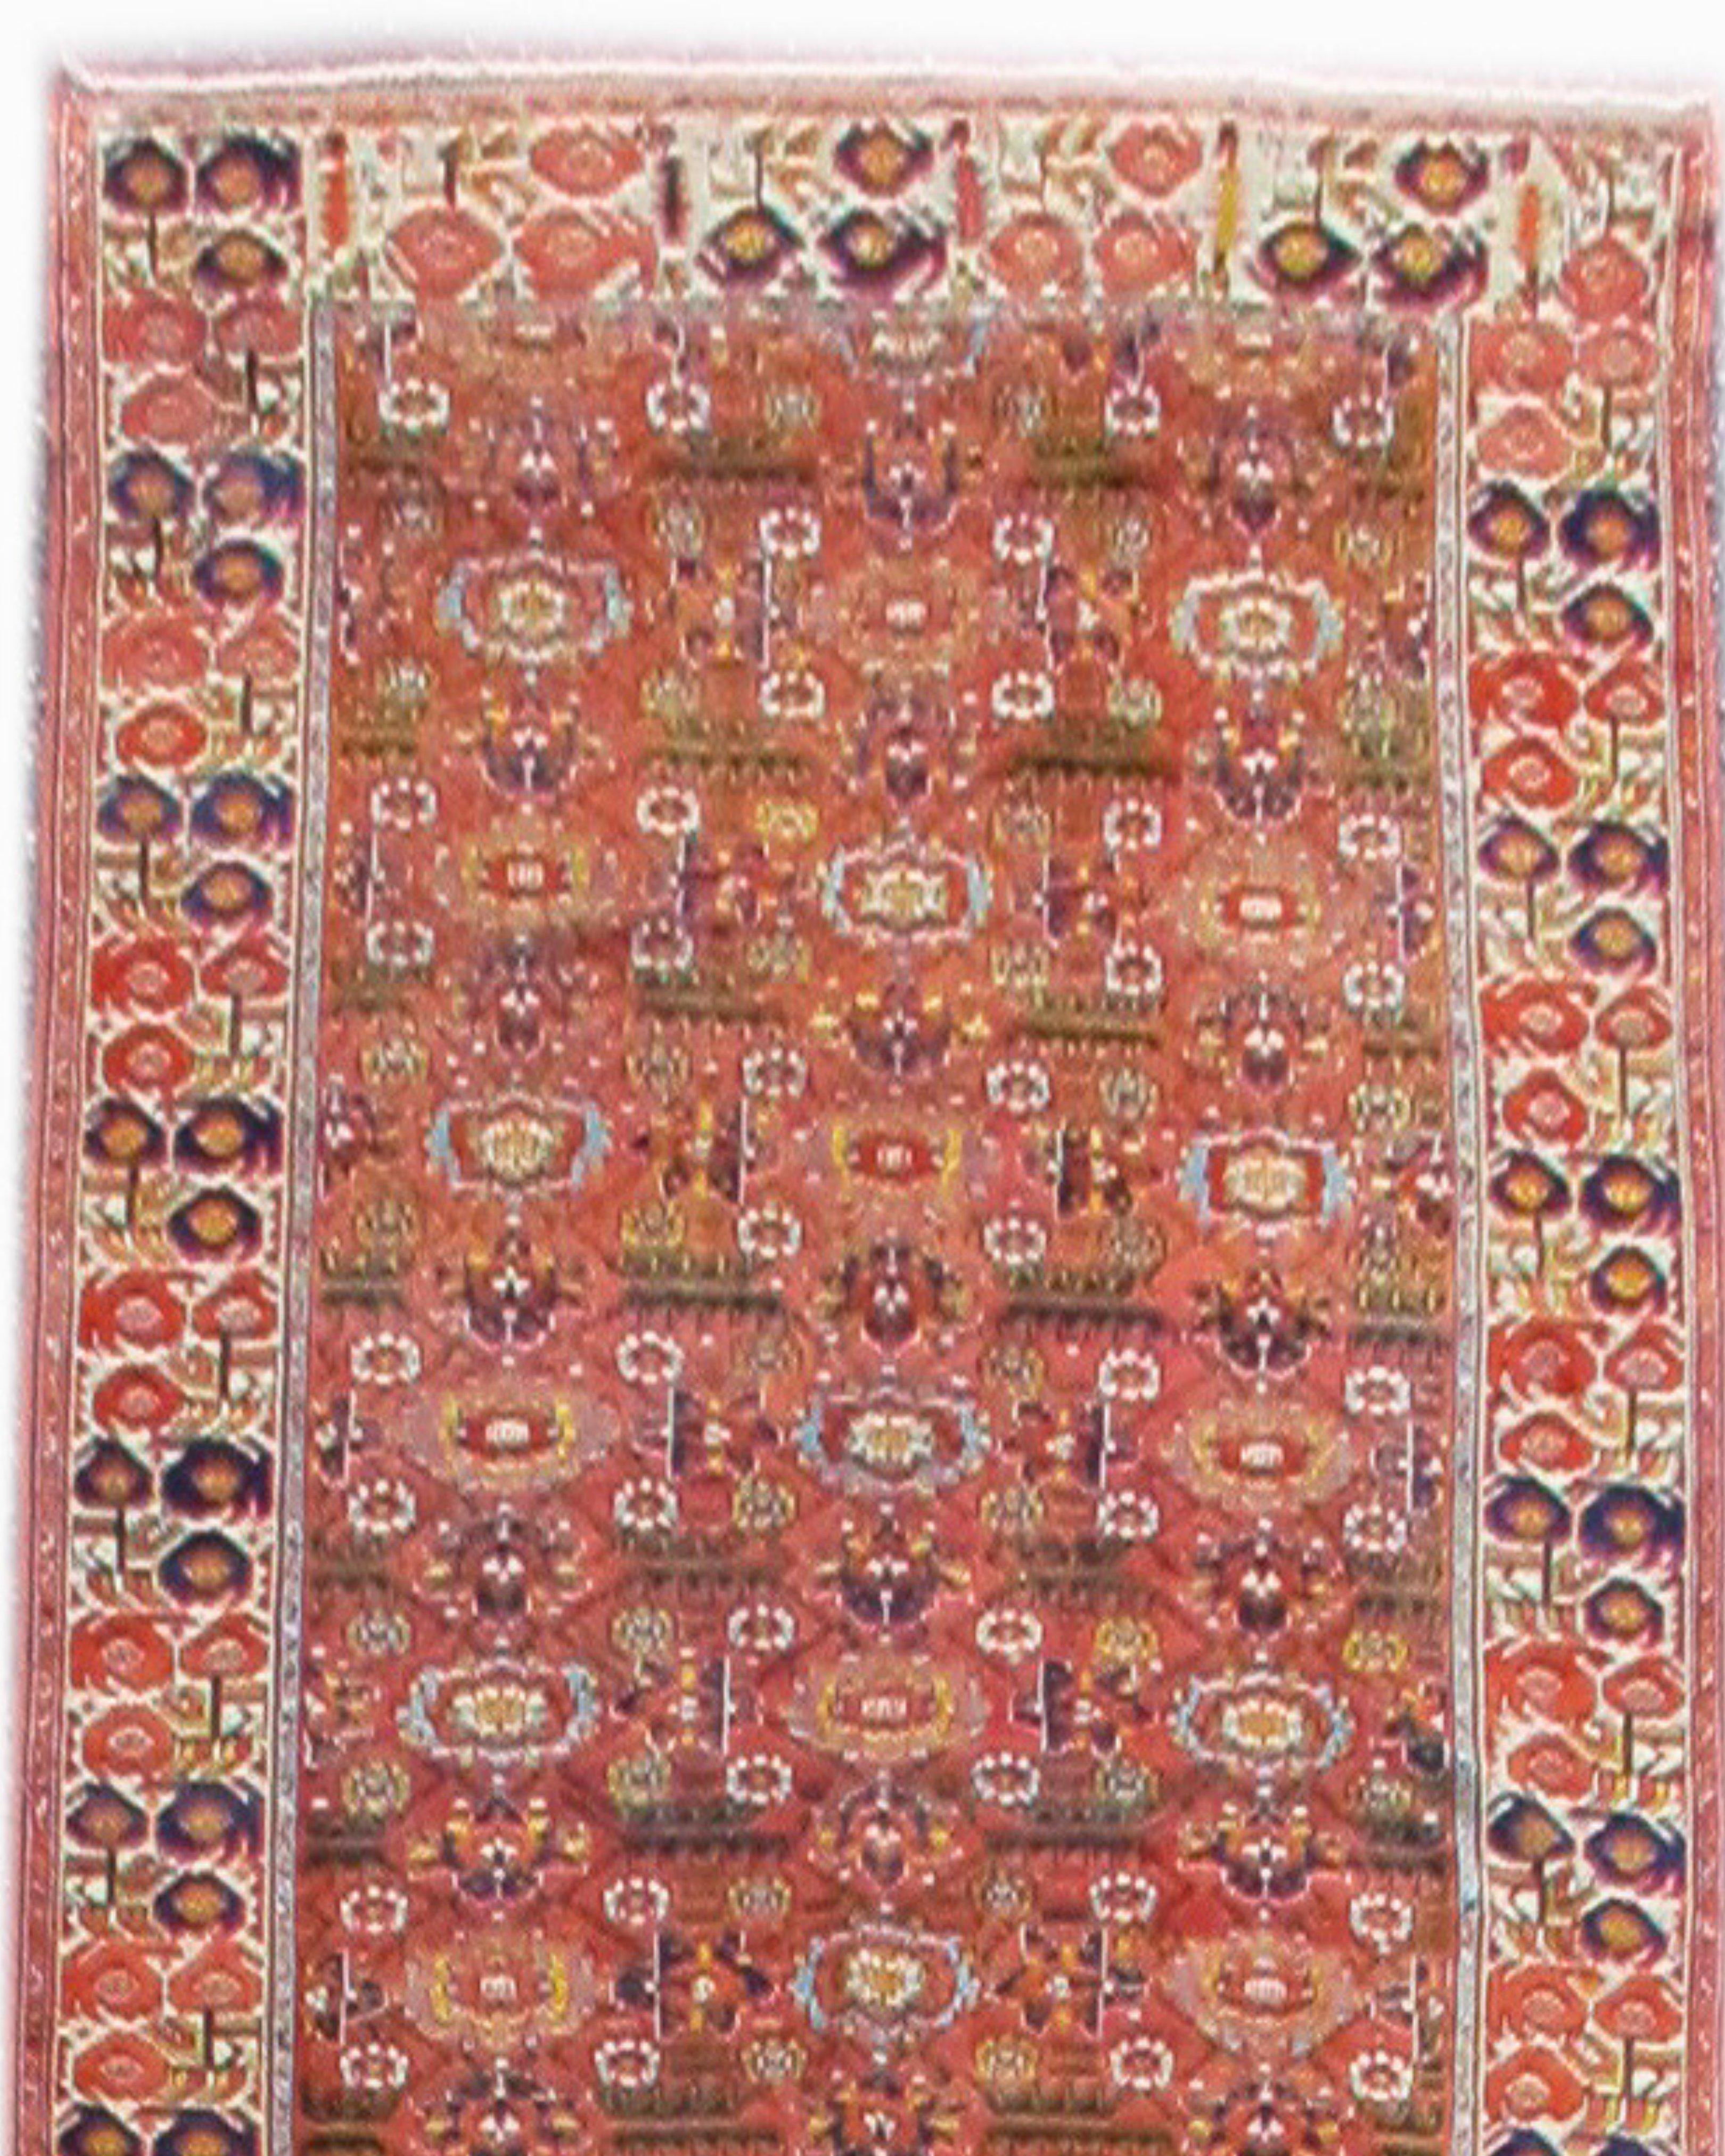 Tapis persan ancien du Nord-Ouest à longues tiges, vers 1900

Ce tapis de couloir palatial allie un dessin et une échelle extraordinaires à une palette vibrante de teintures végétales naturelles. Le champ utilise une version plus ancienne et plus